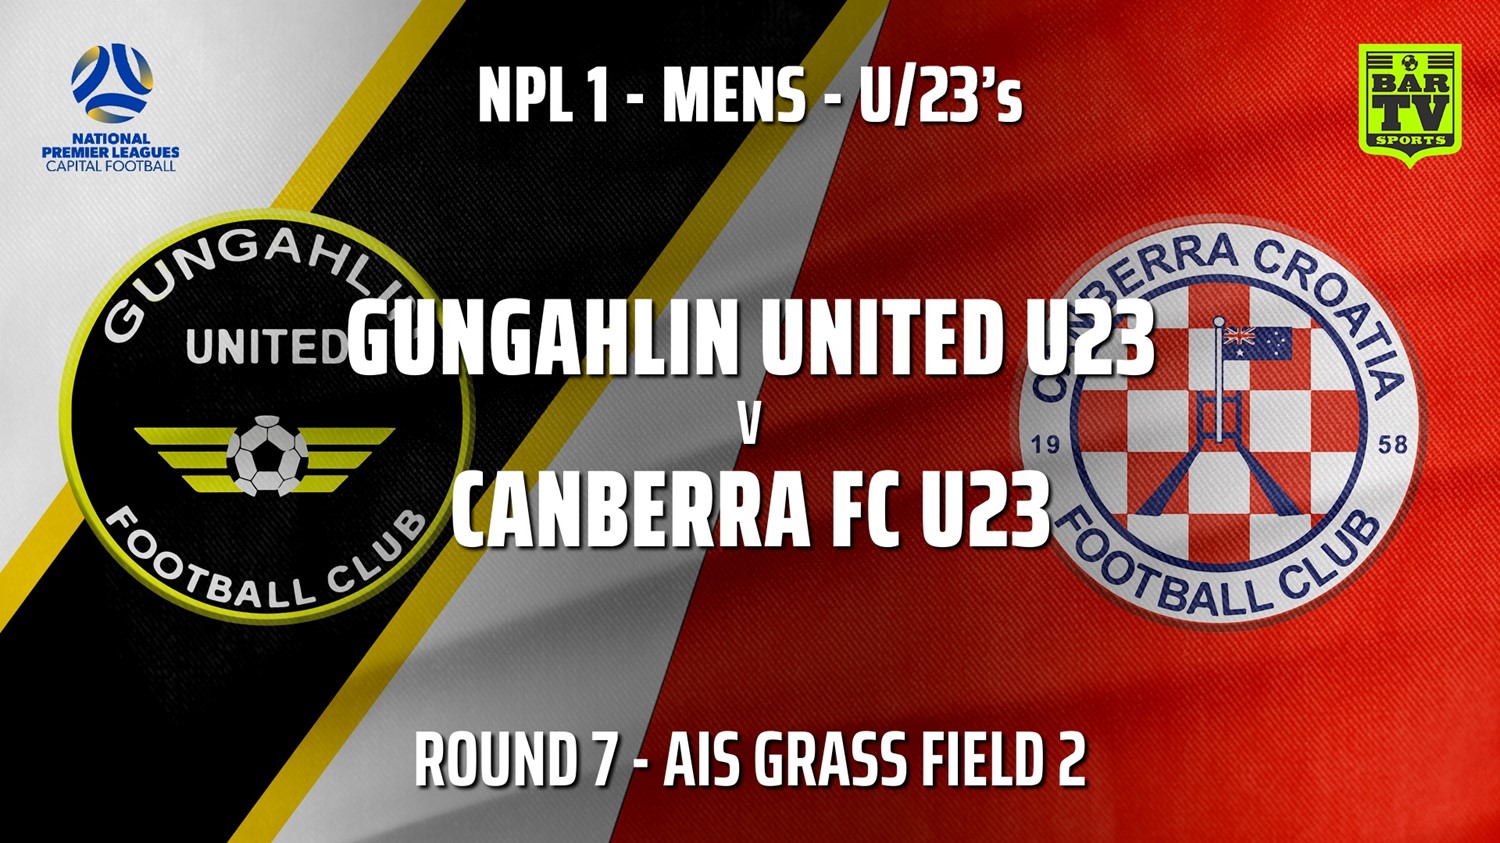 210523-NPL1 U23 Capital Round 7 - Gungahlin United U23 v Canberra FC U23 Minigame Slate Image